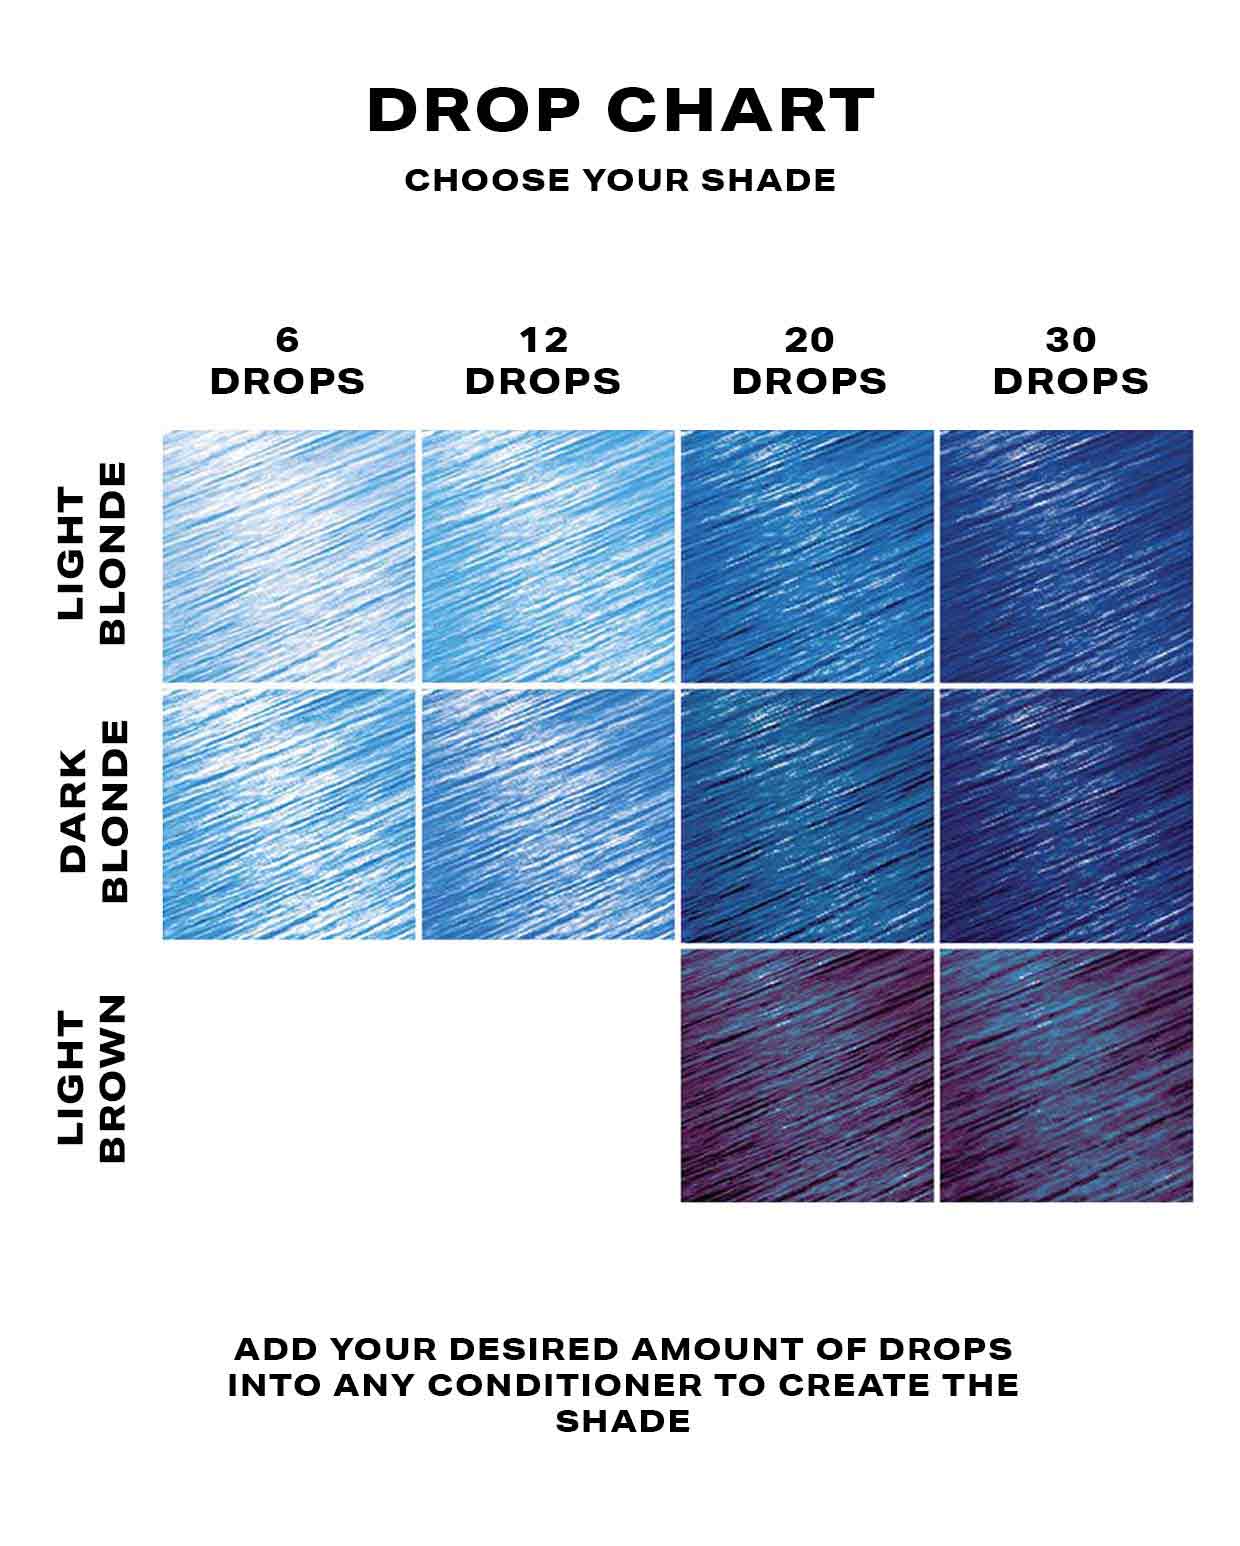 Blue hair dye DROP IT chart